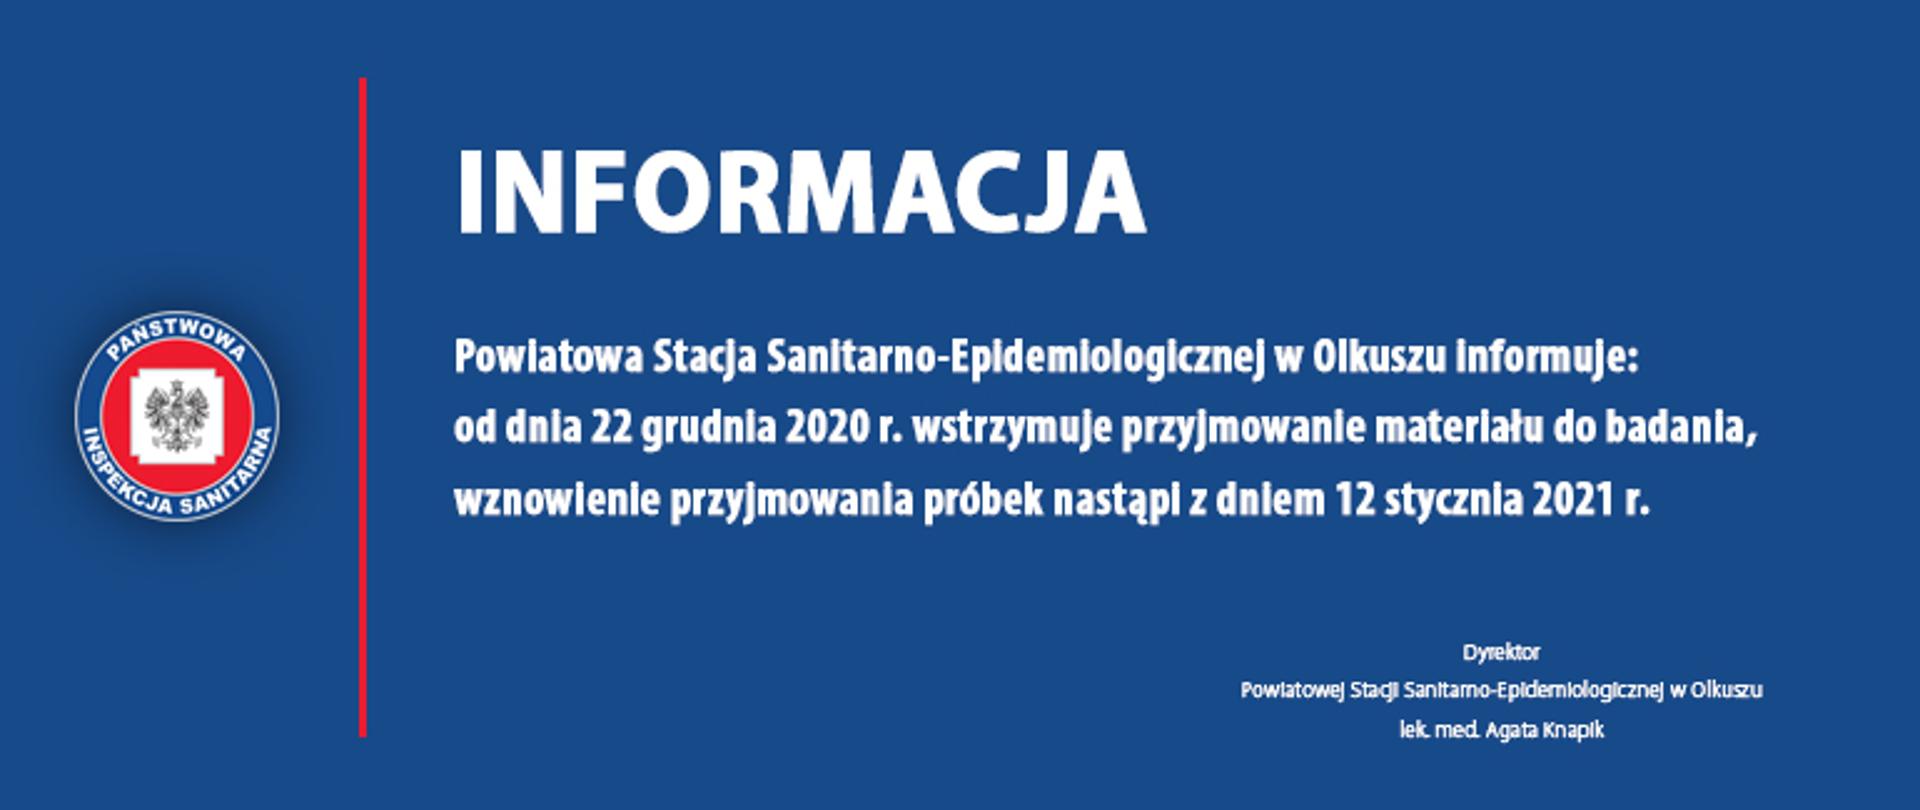 INFORMACJA
Powiatowa Stacja Sanitarno-Epidemiologicznej w Olkuszu informuje:
od dnia 22 grudnia 2020 r. wstrzymuje przyjmowanie materiału do badania,
wznowienie przyjmowania próbek nastąpi z dniem 12 stycznia 2021 r.